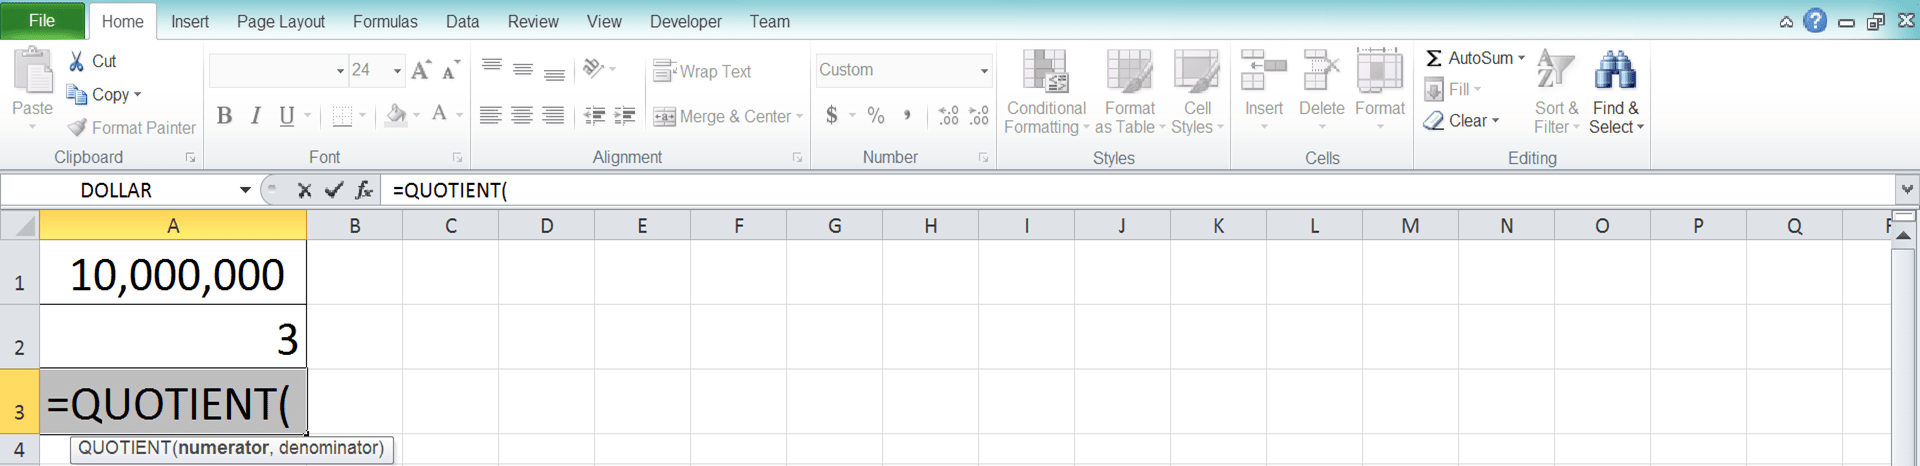 Cara Menggunakan Rumus QUOTIENT Excel: Fungsi, Contoh, dan Langkah Penulisan - Screenshot Langkah 2